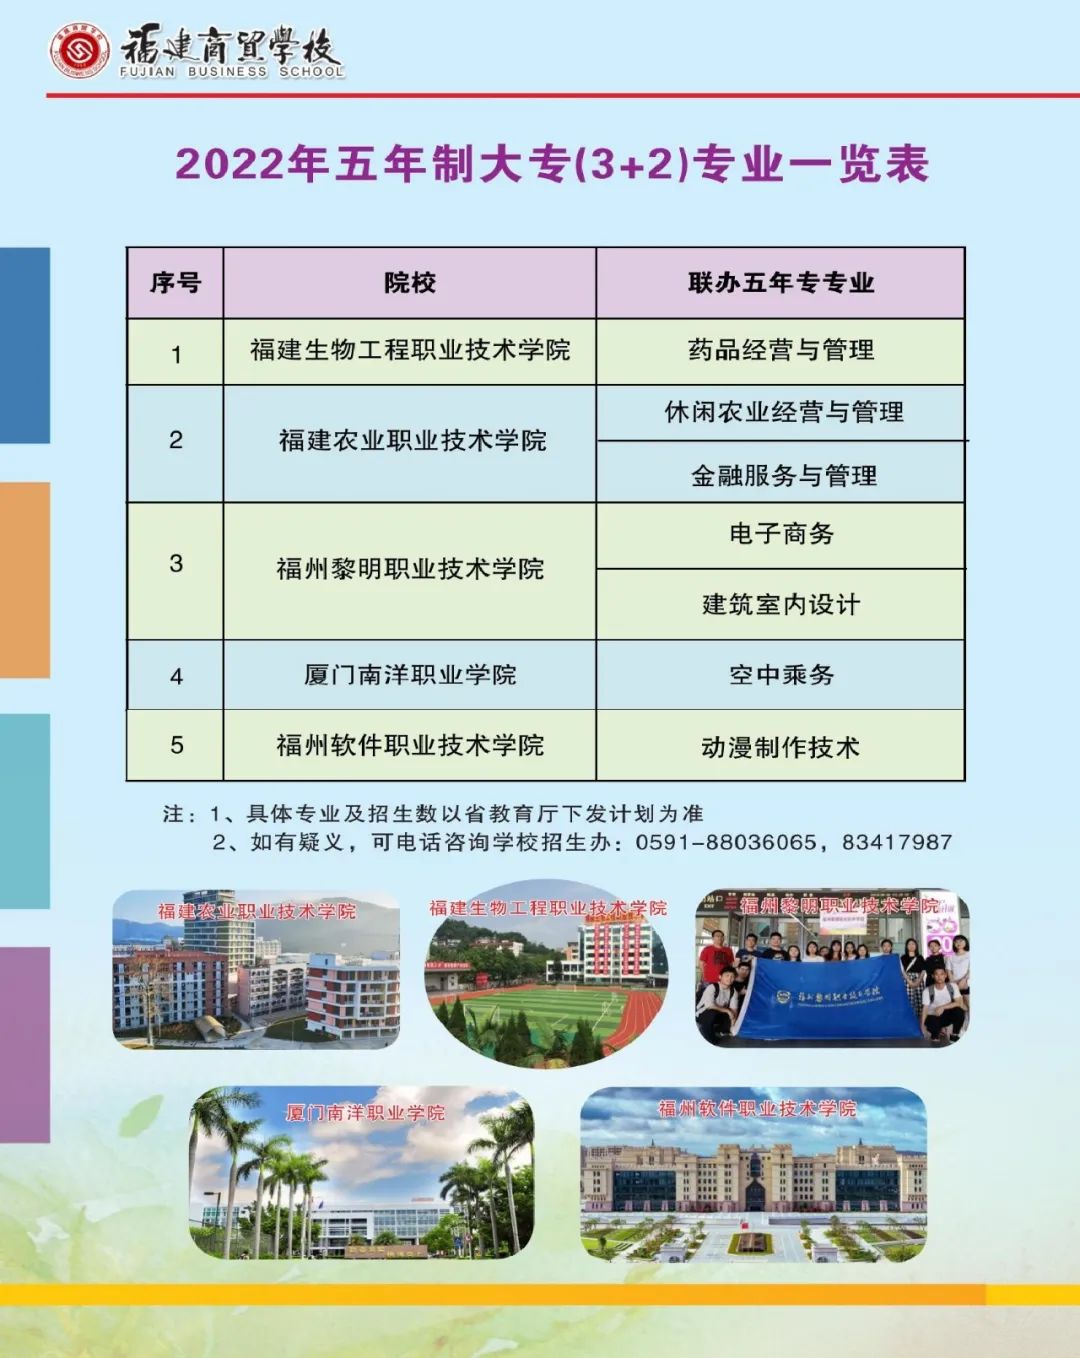 福建商贸学校2022年招生简章